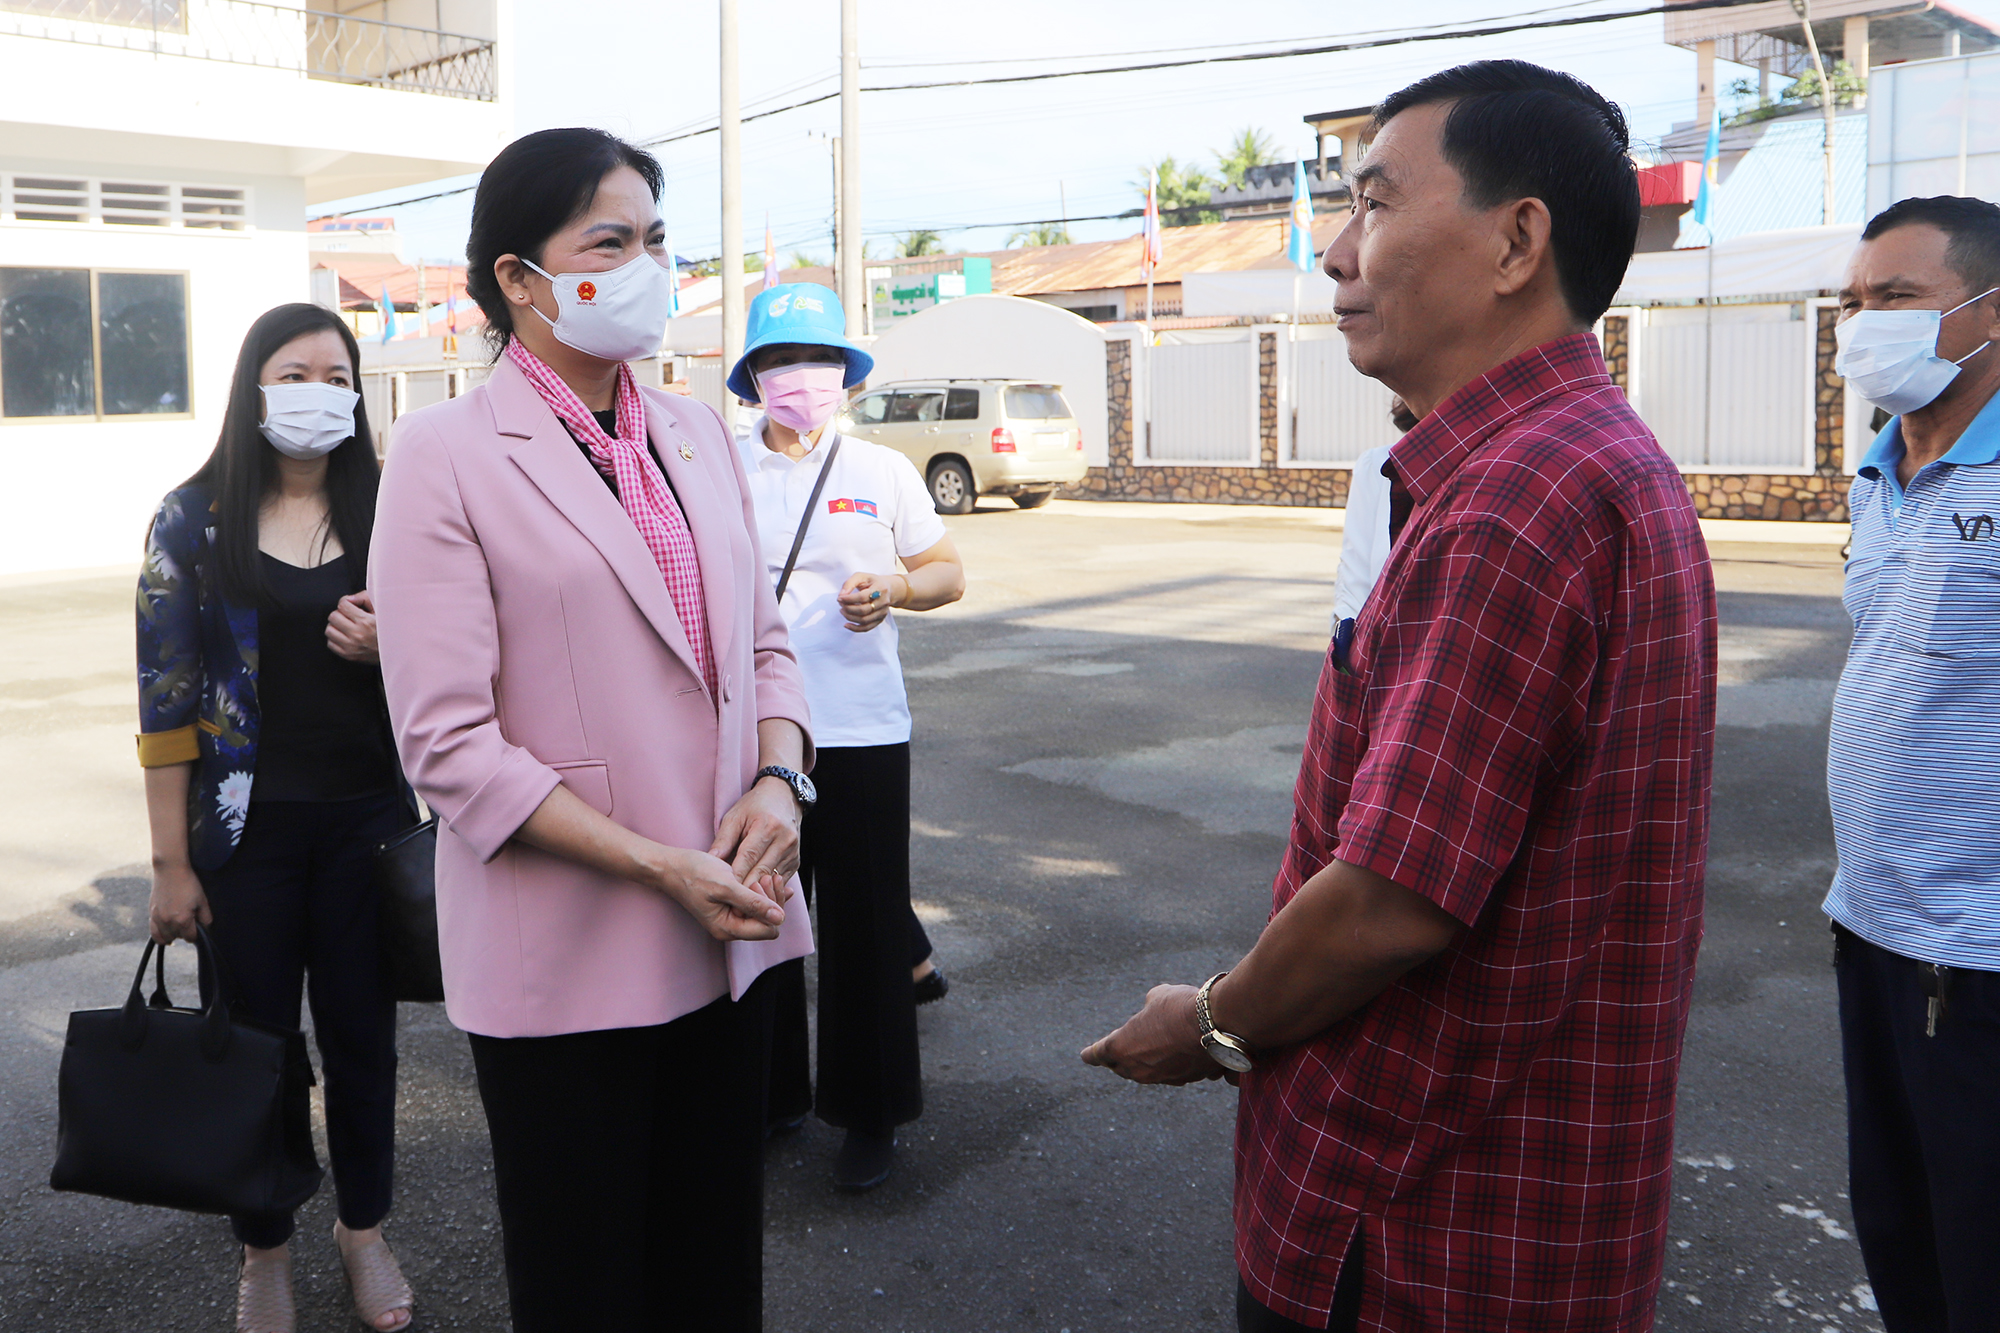 Cuộc gặp xúc động với những phụ nữ Campuchia từng hỗ trợ quân tình nguyện Việt Nam và người Việt sinh sống tại tỉnh Kampot  - Ảnh 4.